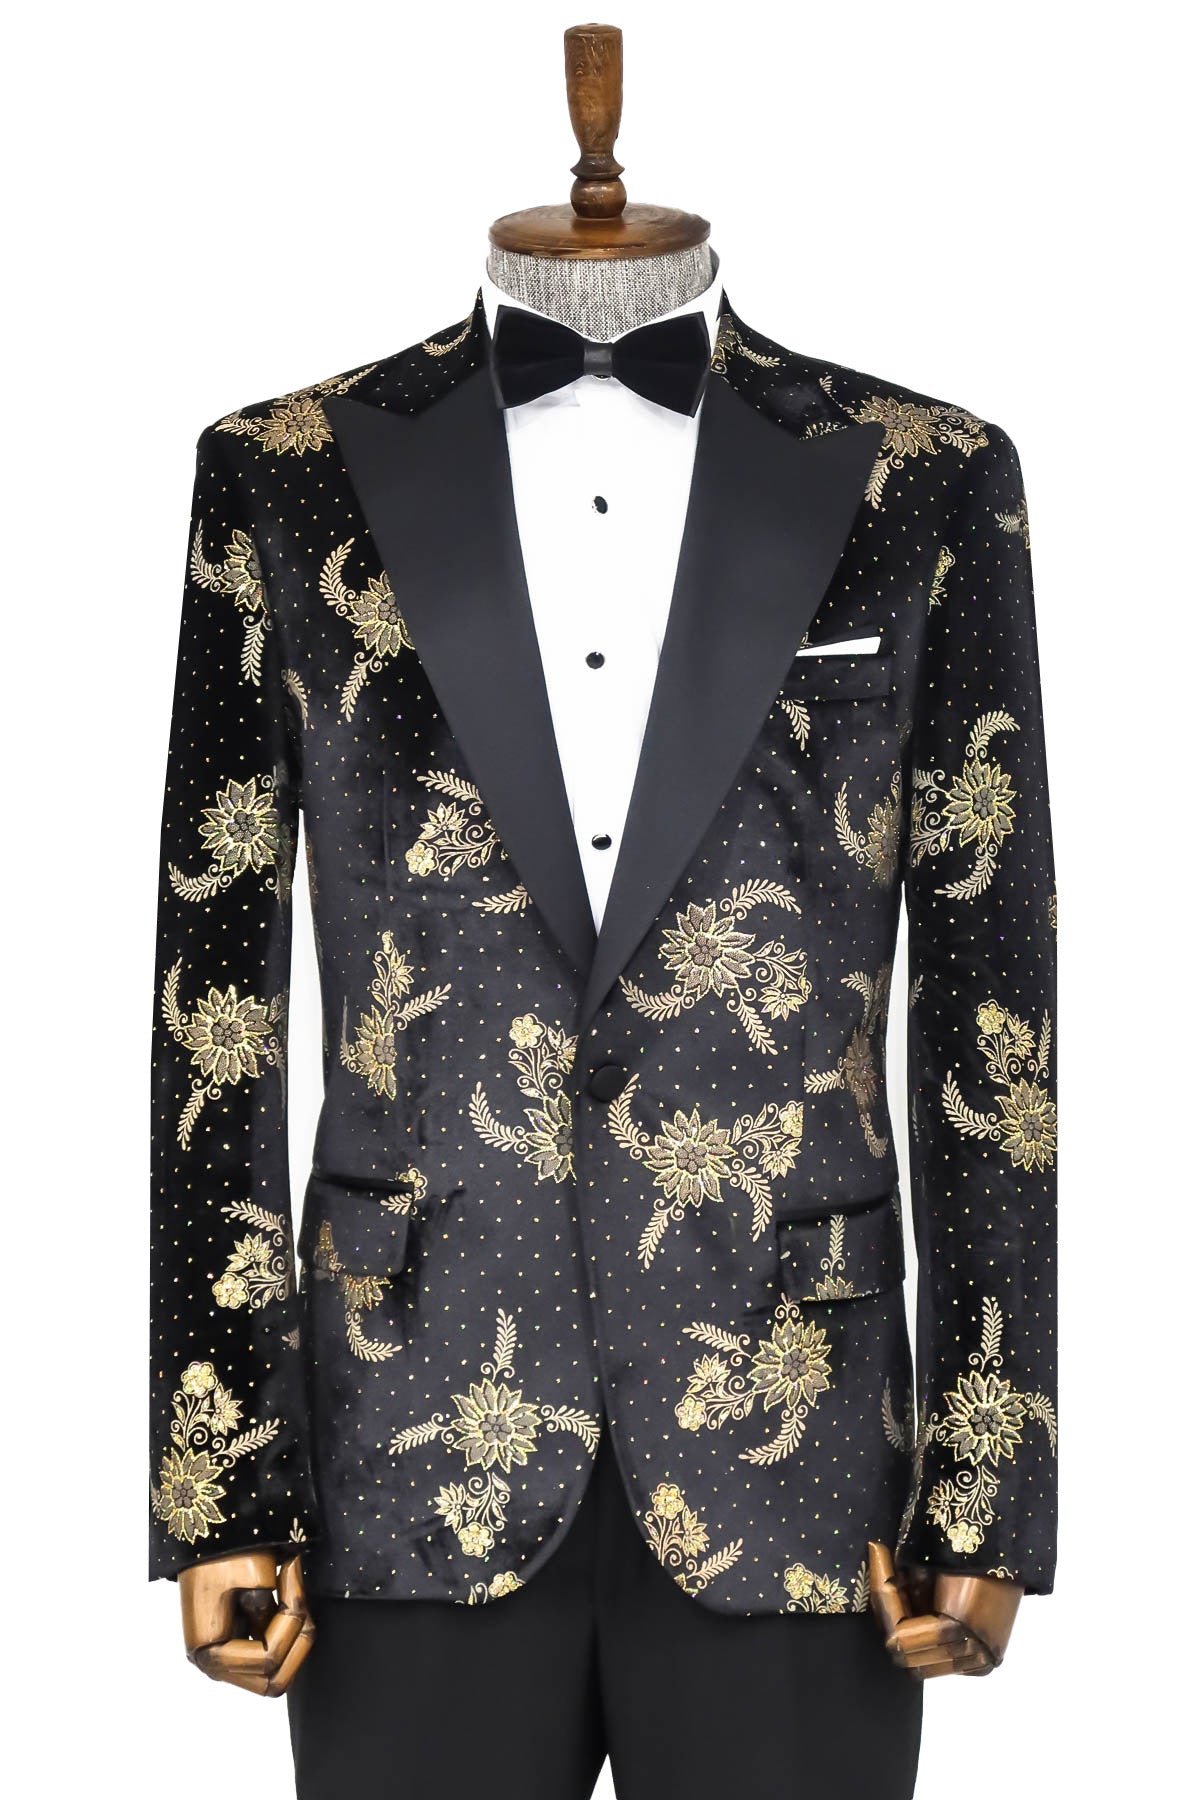 dot-floral-patterned-velvet-black-men-prom-blazer-wessi